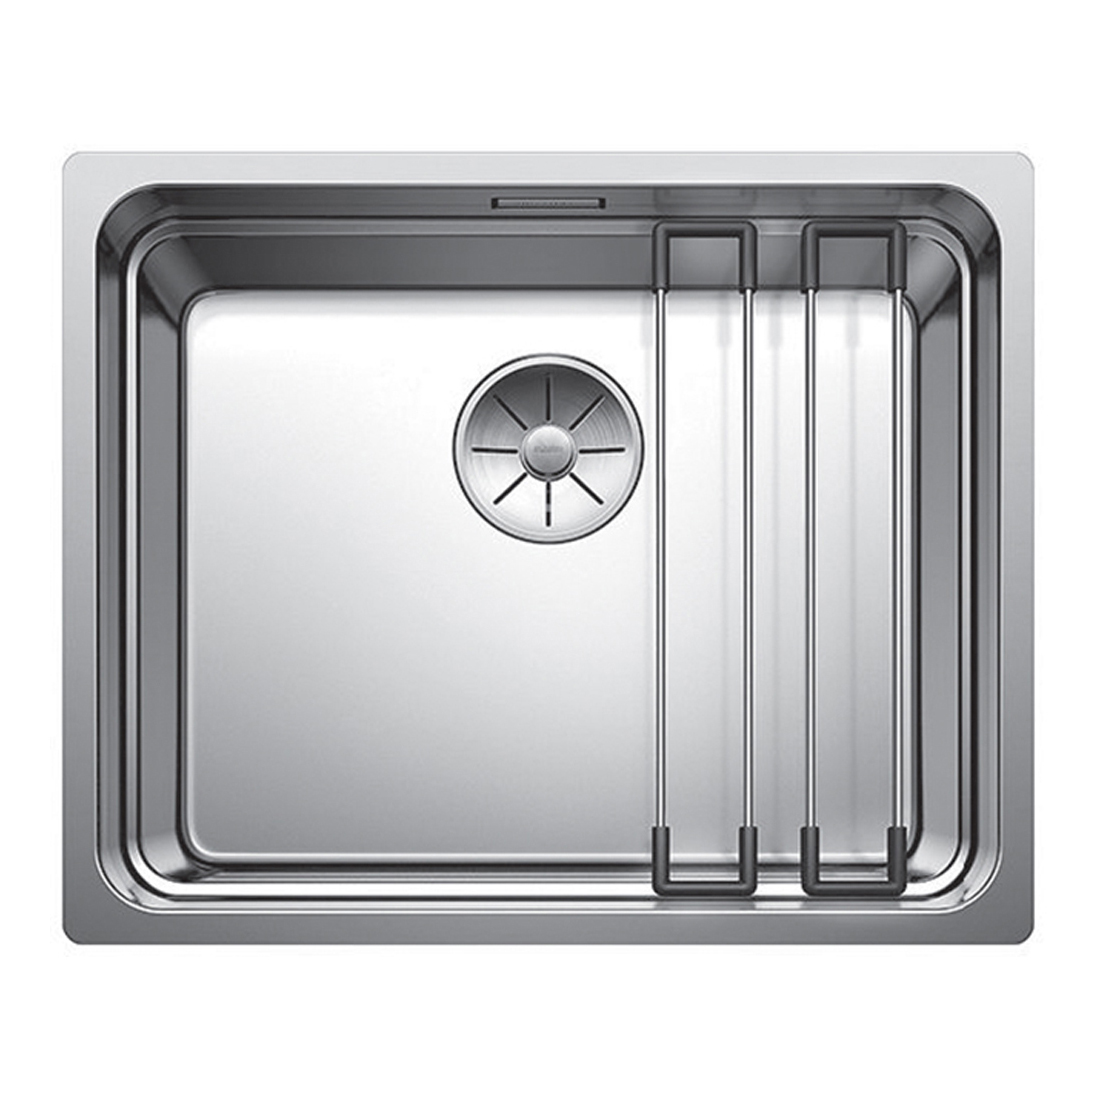 Кухонная мойка Blanco Etagon 500-IF полированная сталь кухонная мойка franke 127 0688 779 нержавеющая сталь